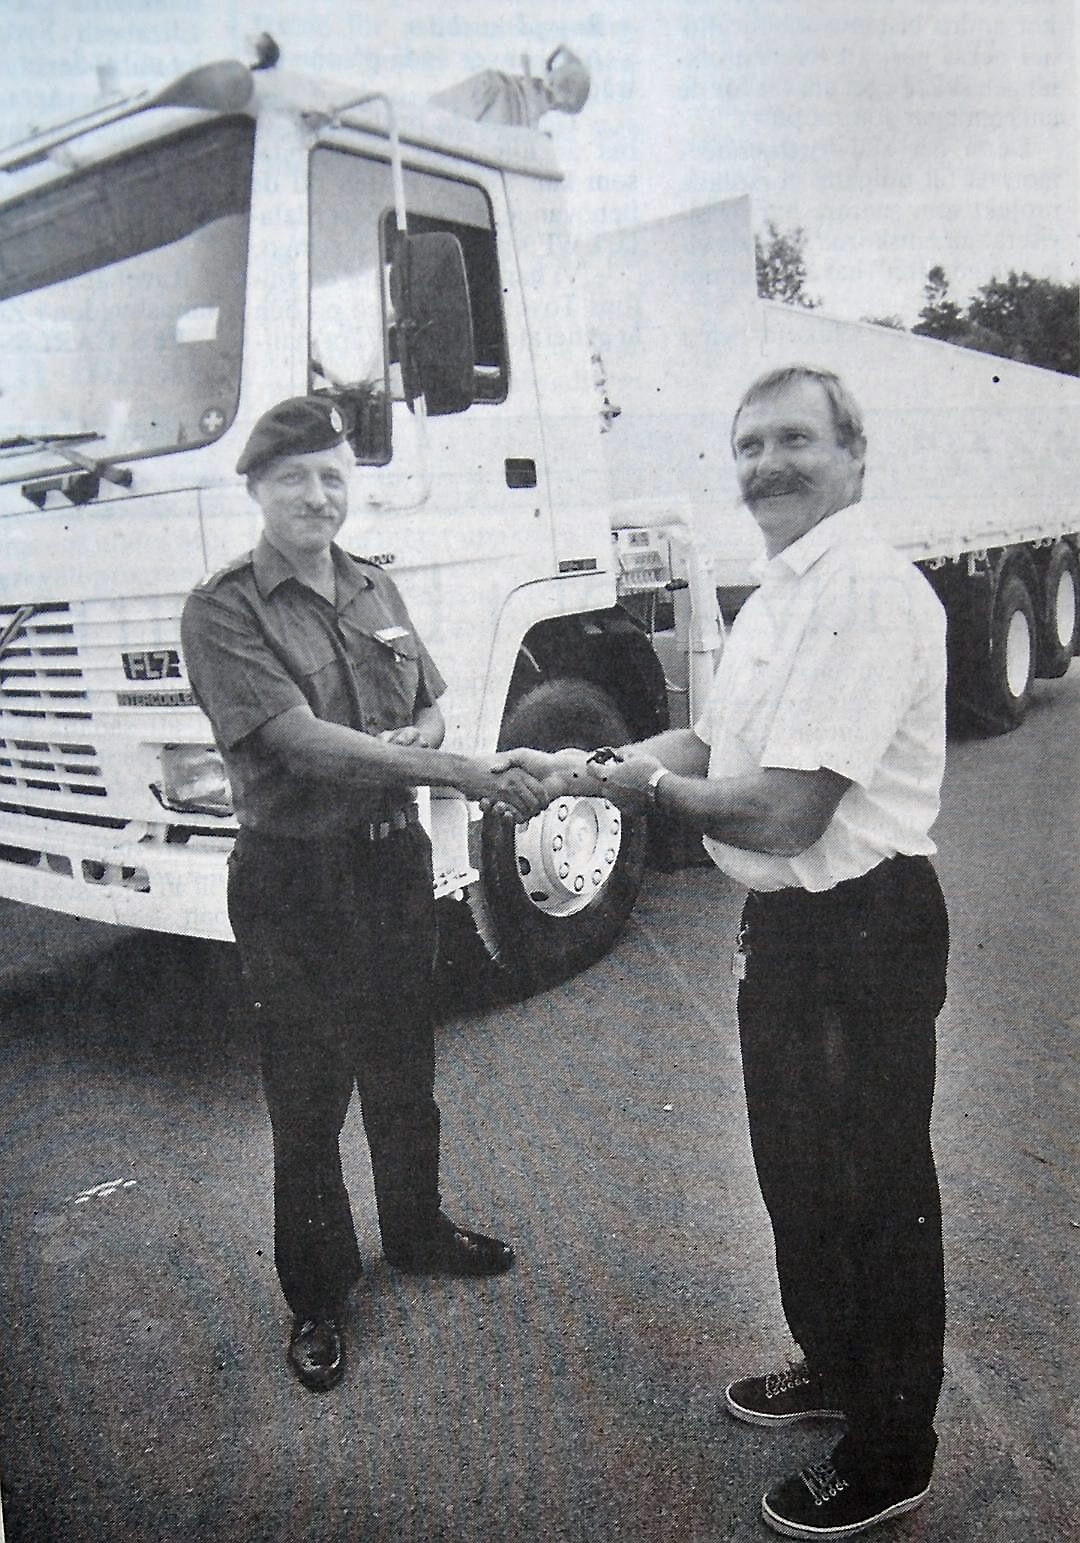 Peter Alf överlämnar den vita lastbilens nycklar till Rolf Jönsson och önskar lycka till med det riskfyllda uppdraget.
Arkivbild: Björn Nilsson